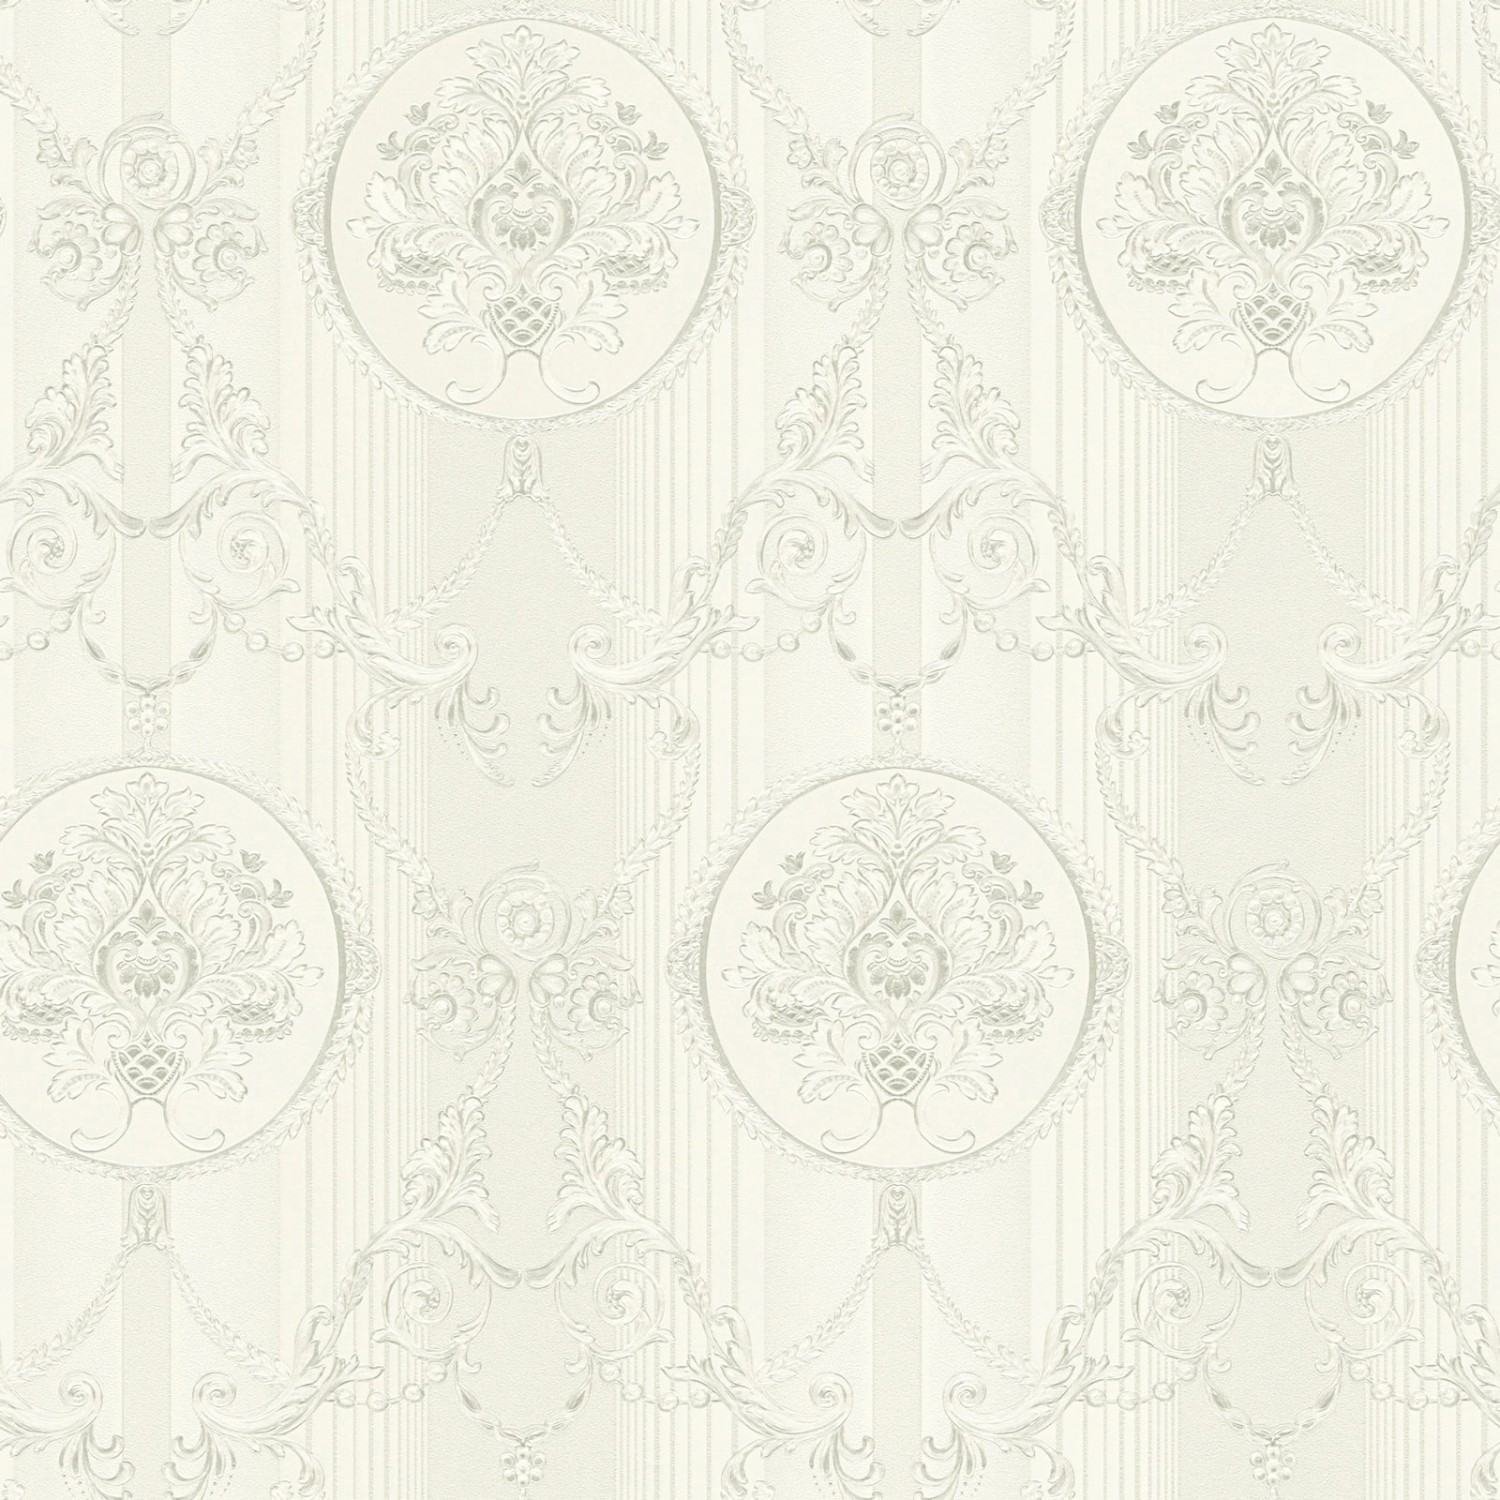 Bricoflor Neobarock Tapete Edel Vlies Barocktapete in Weiß Grau für Schlafzimmer und Esszimmer Elegante Vliestapete mit 